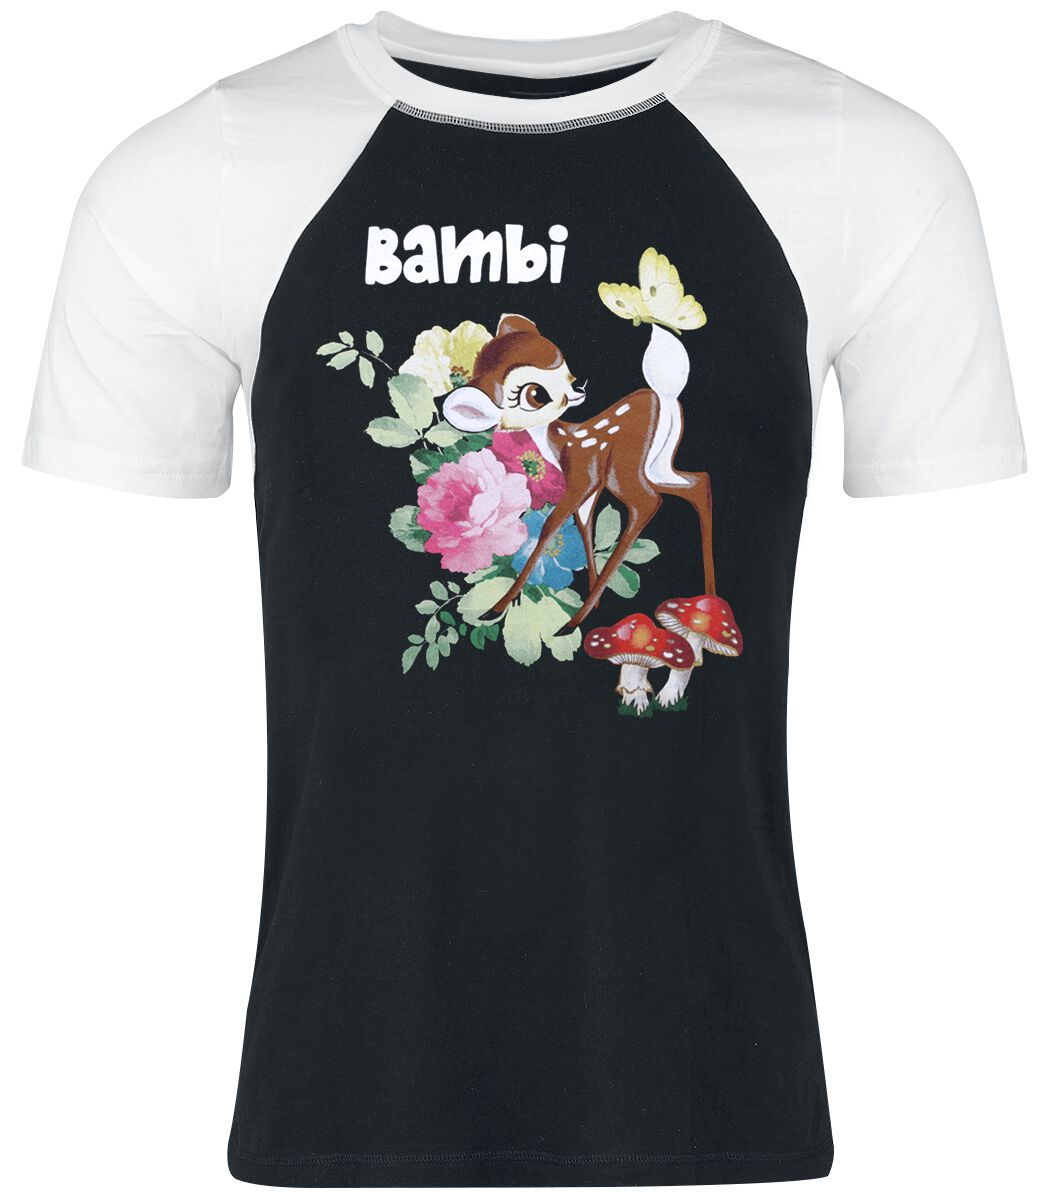 T-Shirt Manches courtes Disney de Bambi - Flowers - S à XXL - pour Femme - noir